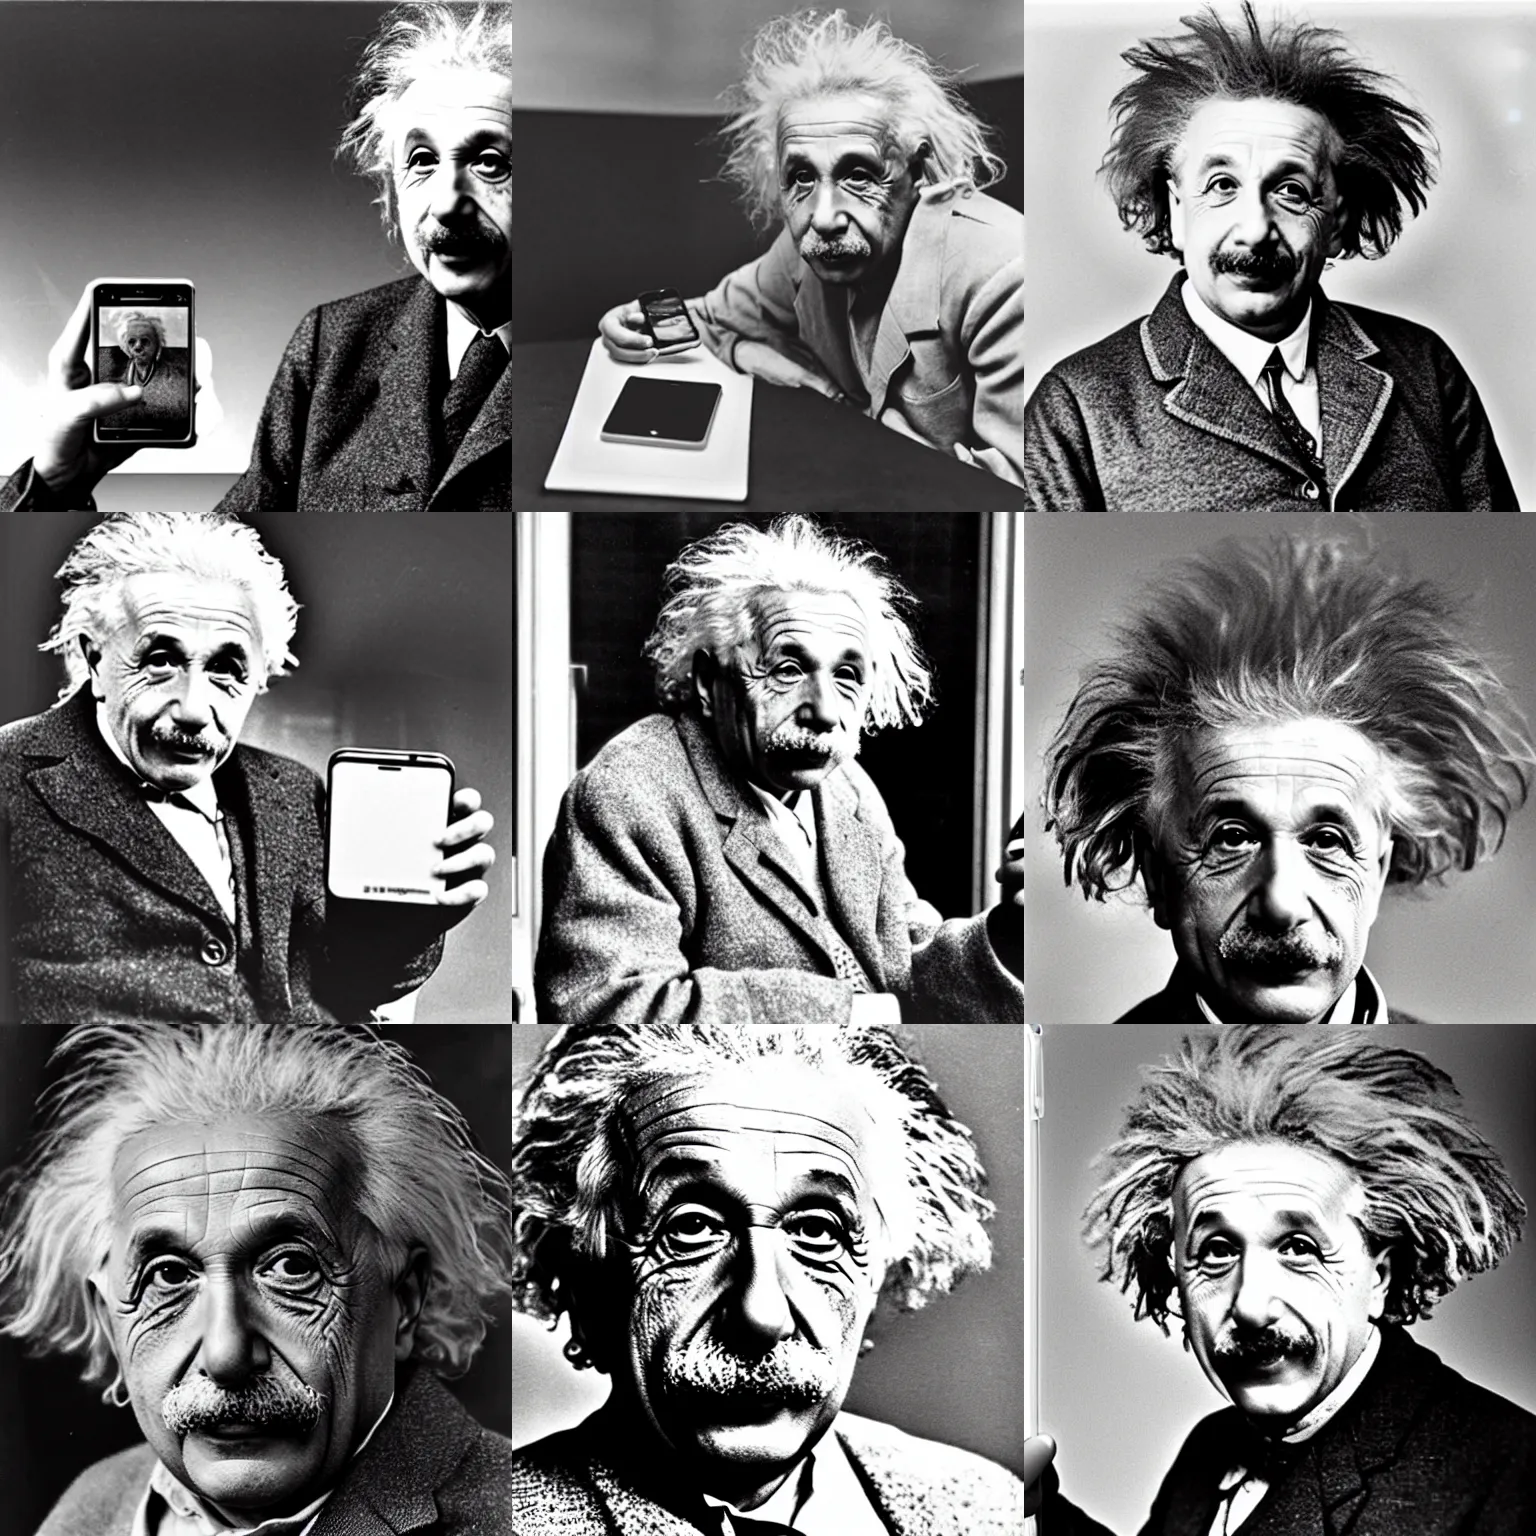 Prompt: Einstein with iPhone